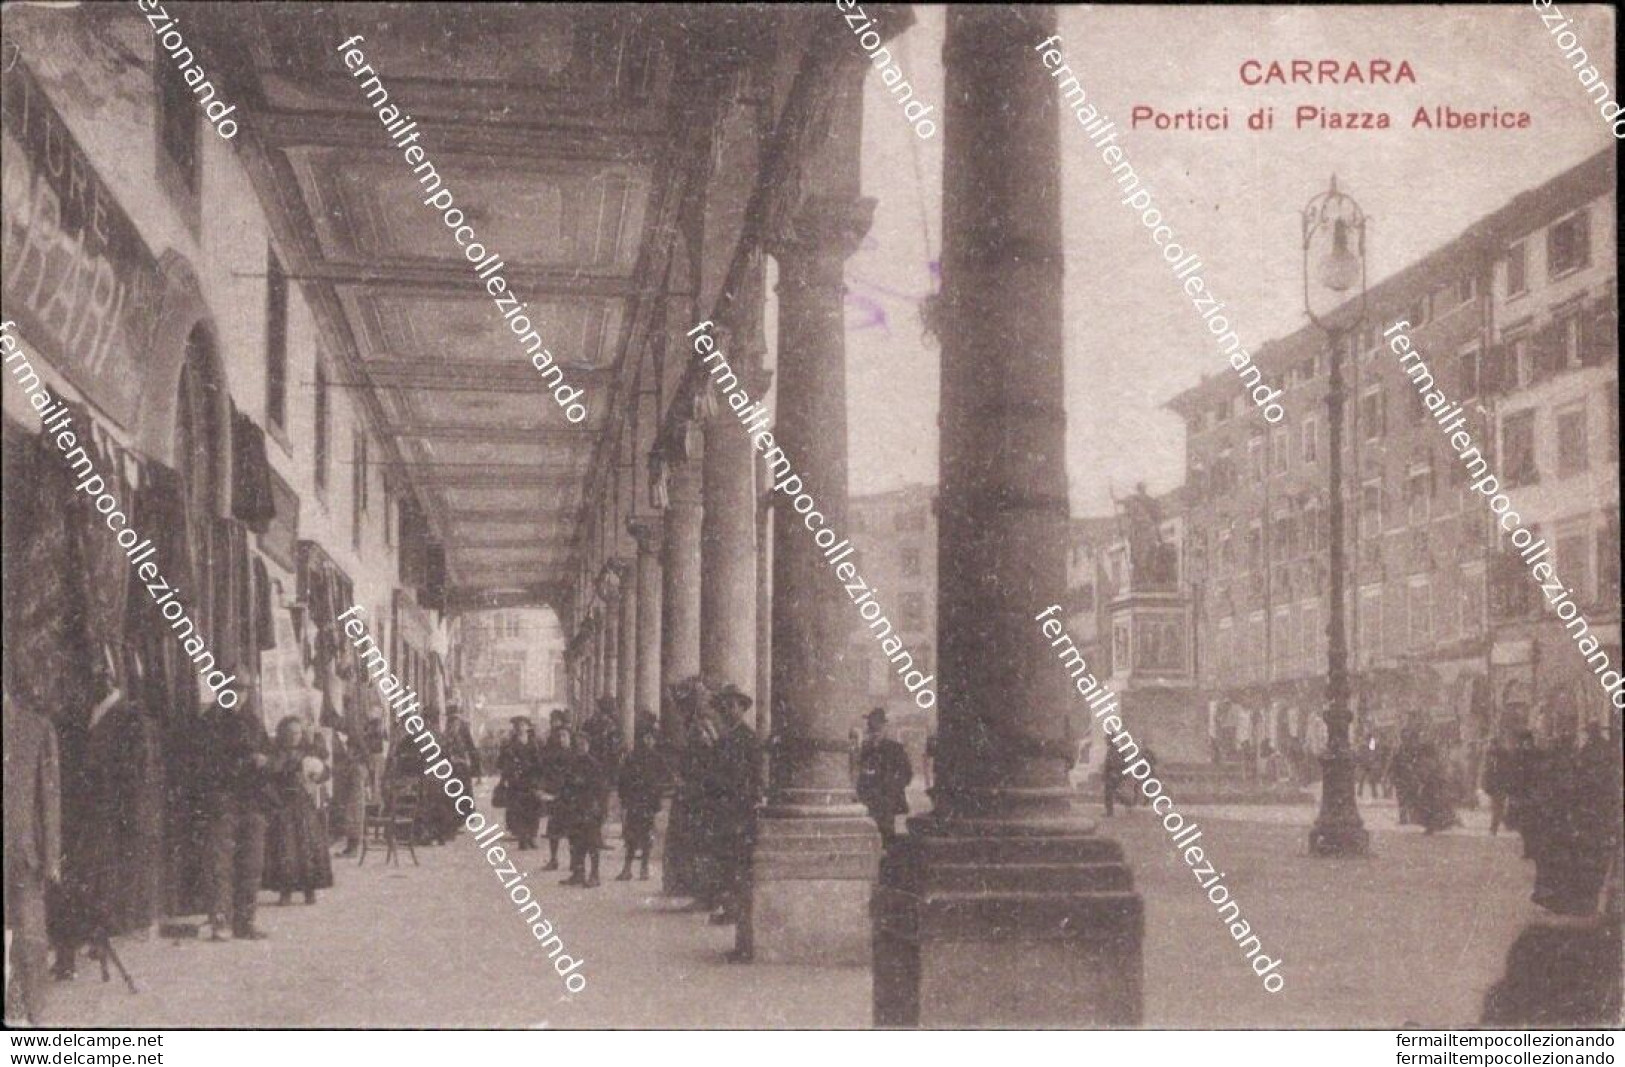 Am779 Cartolina Carrara Portici Di Piazza Alberica Toscana - Massa